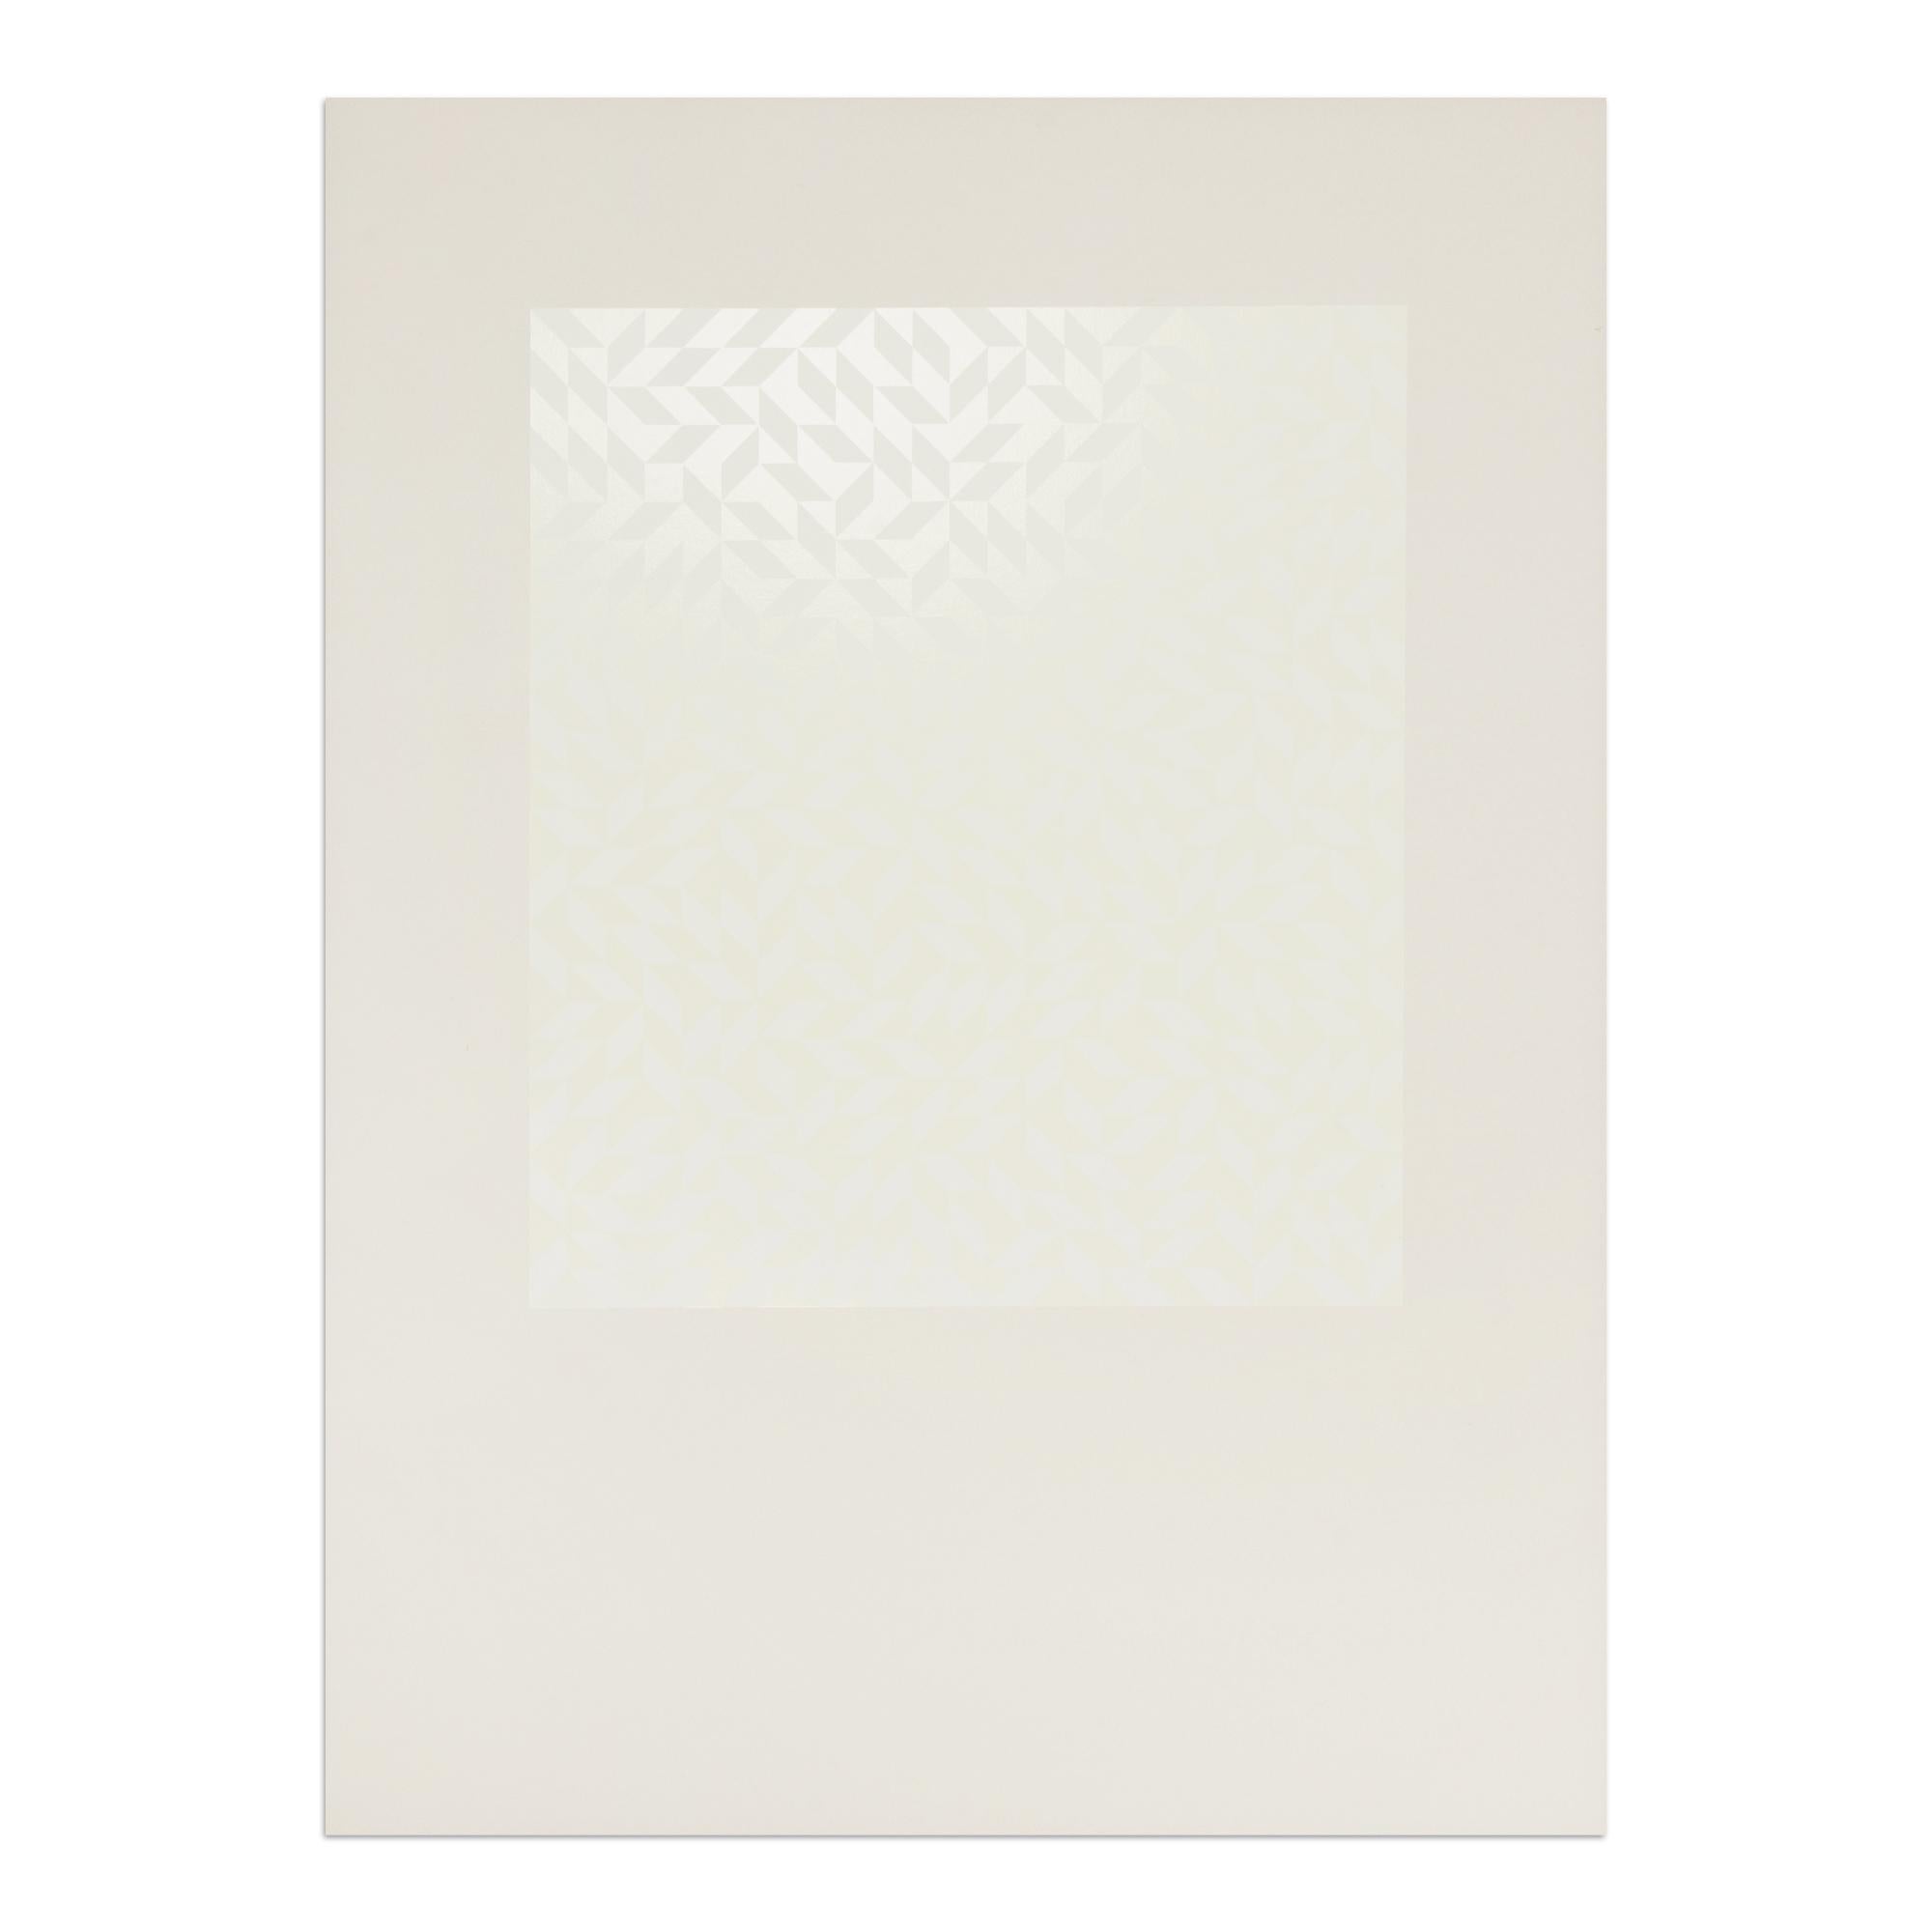 Anni Albers, ST – Original Siebdruck von 1971, Geometrische Abstraktion